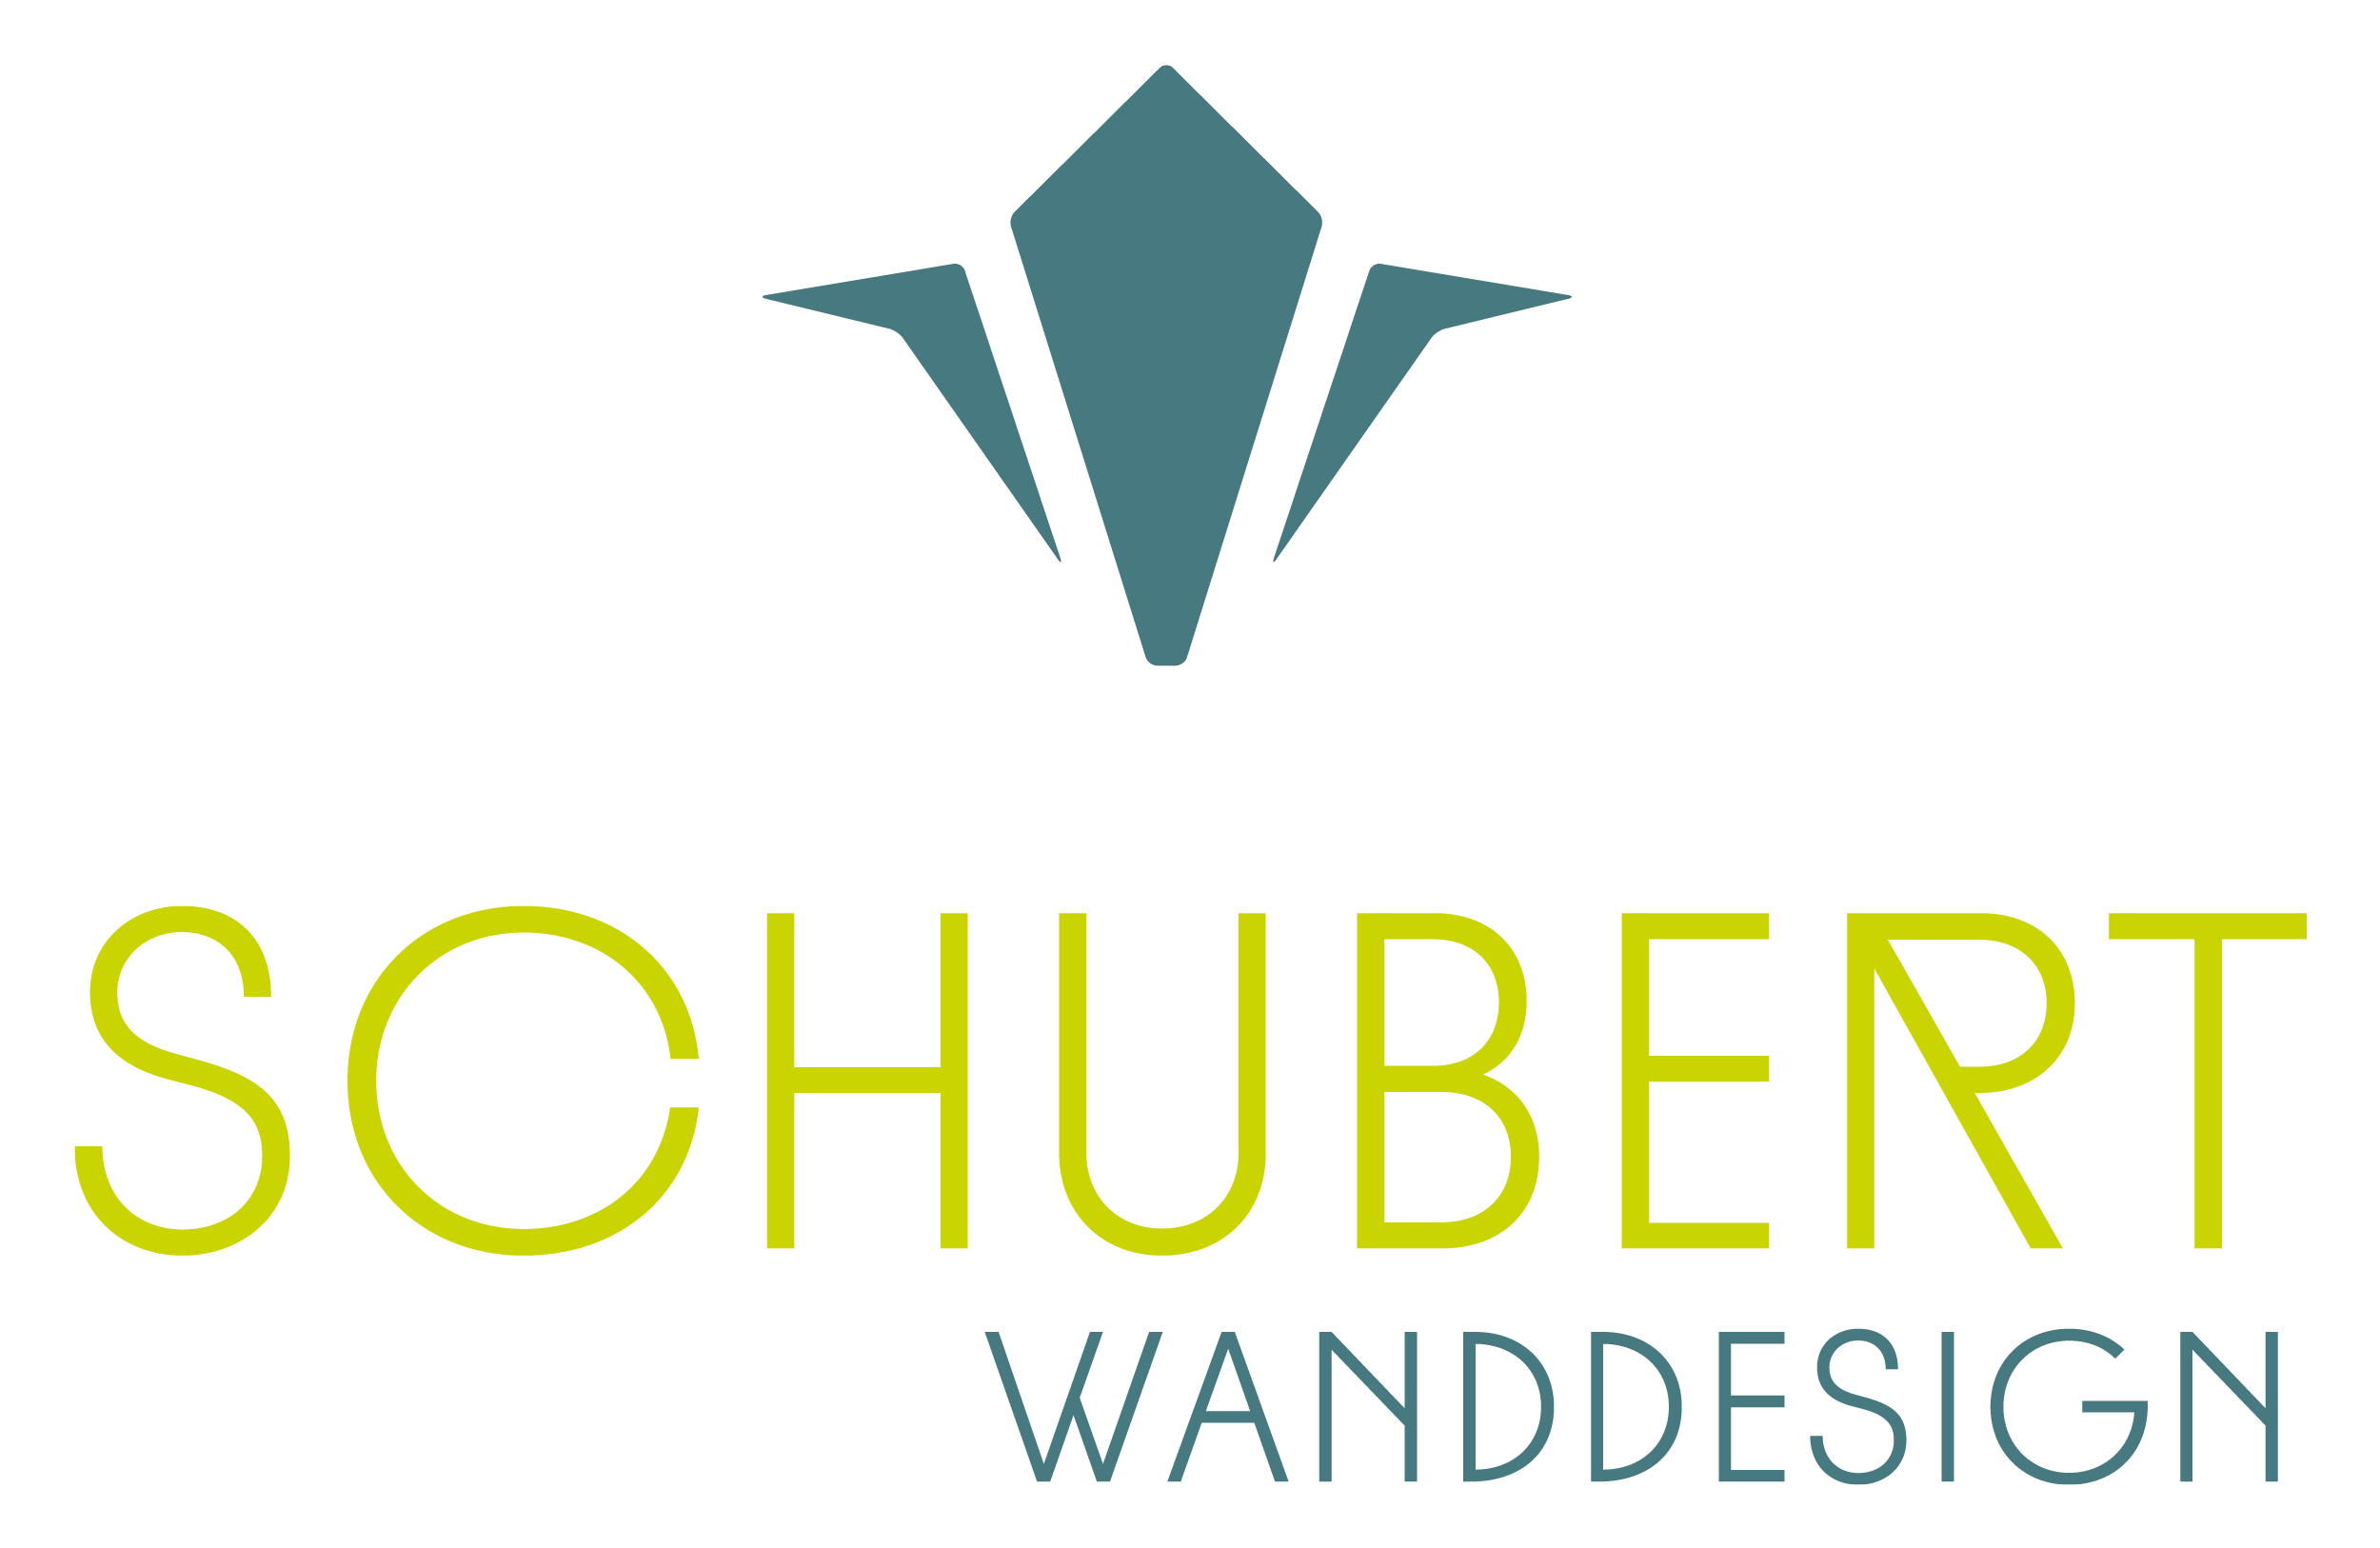 Schubert Wanddesign